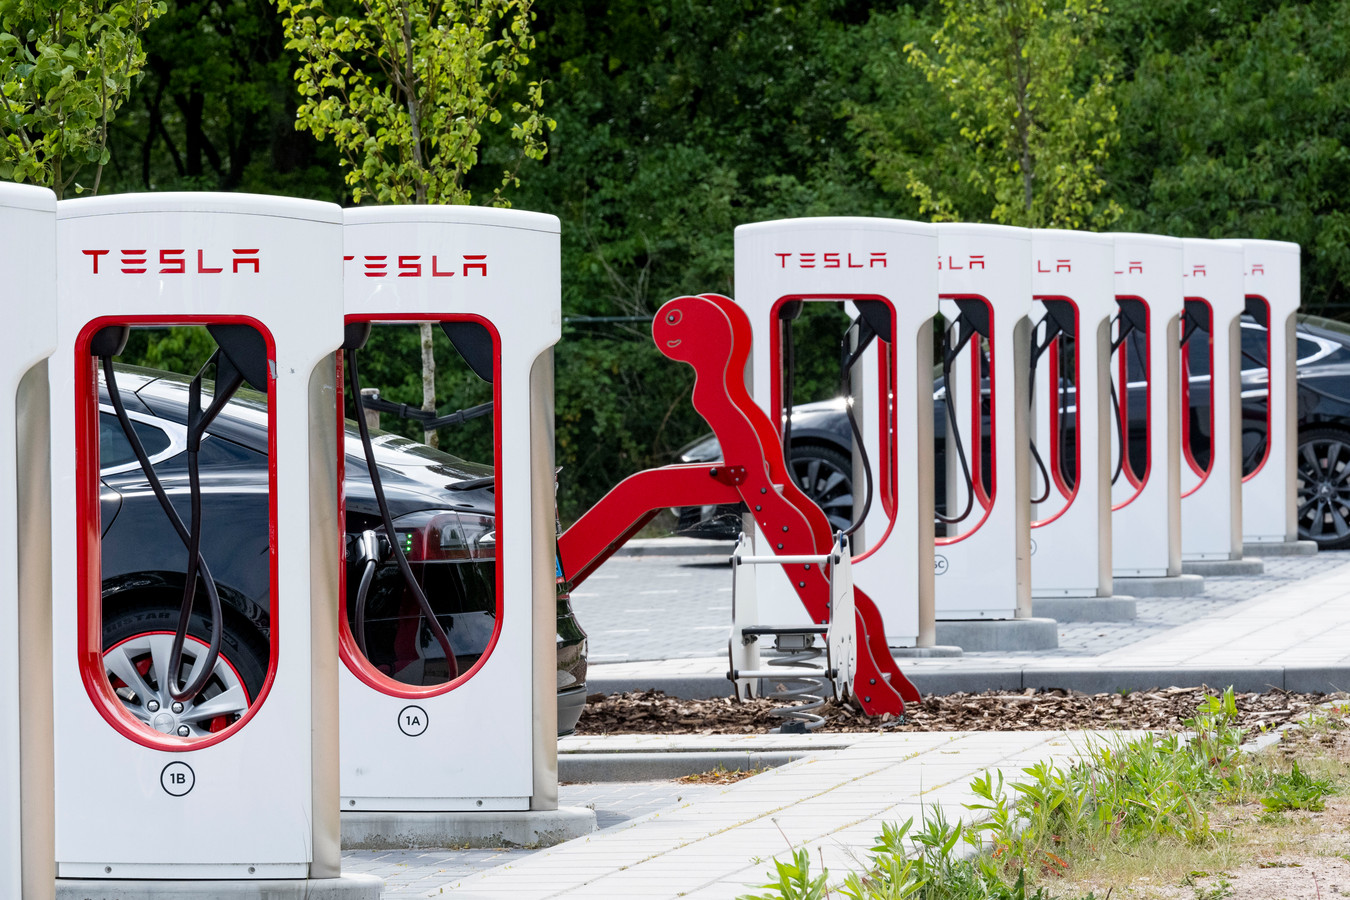 Een Tesla supercharger is een snellaadstation voor het opladen van elektrische auto's van Tesla.